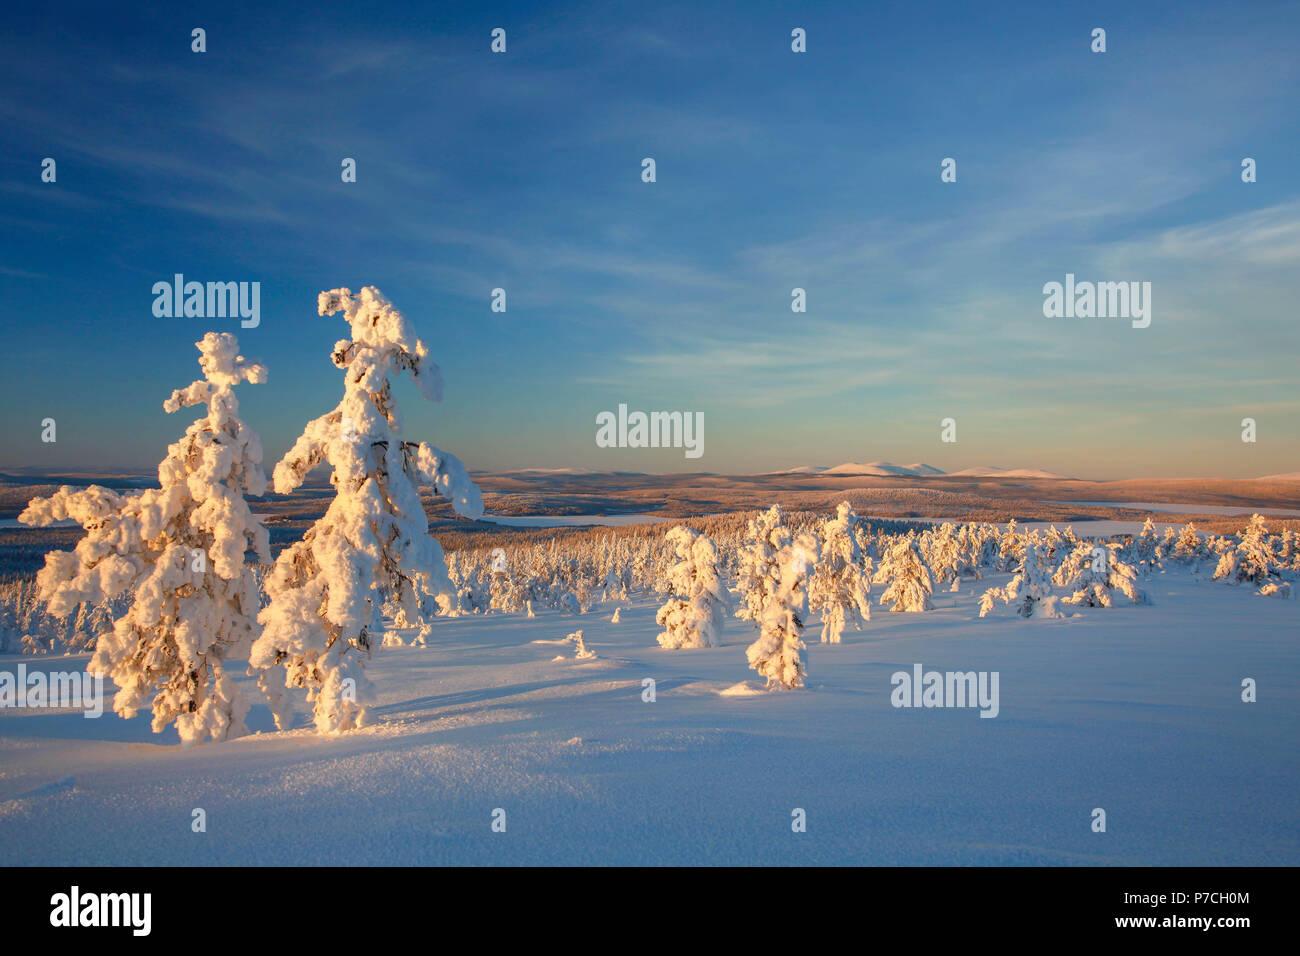 Escena de Invierno de cayó Särkituntturi en Muonio, Finlandia, Laponia Foto de stock